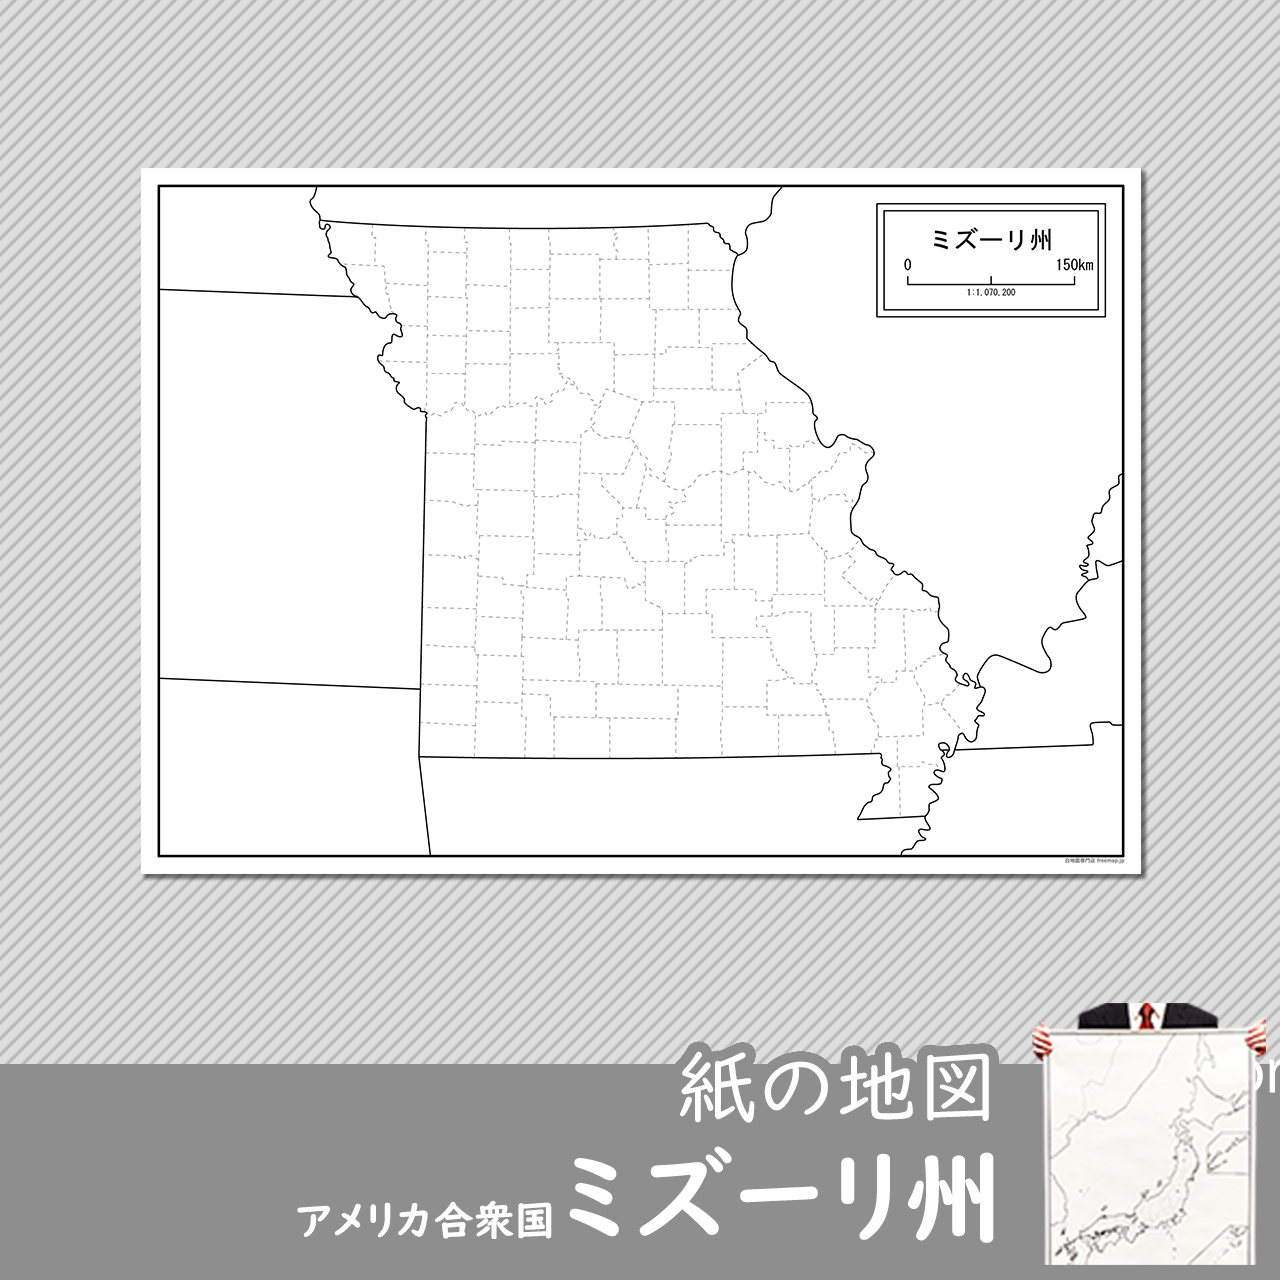 ミズーリ州の紙の白地図のサムネイル